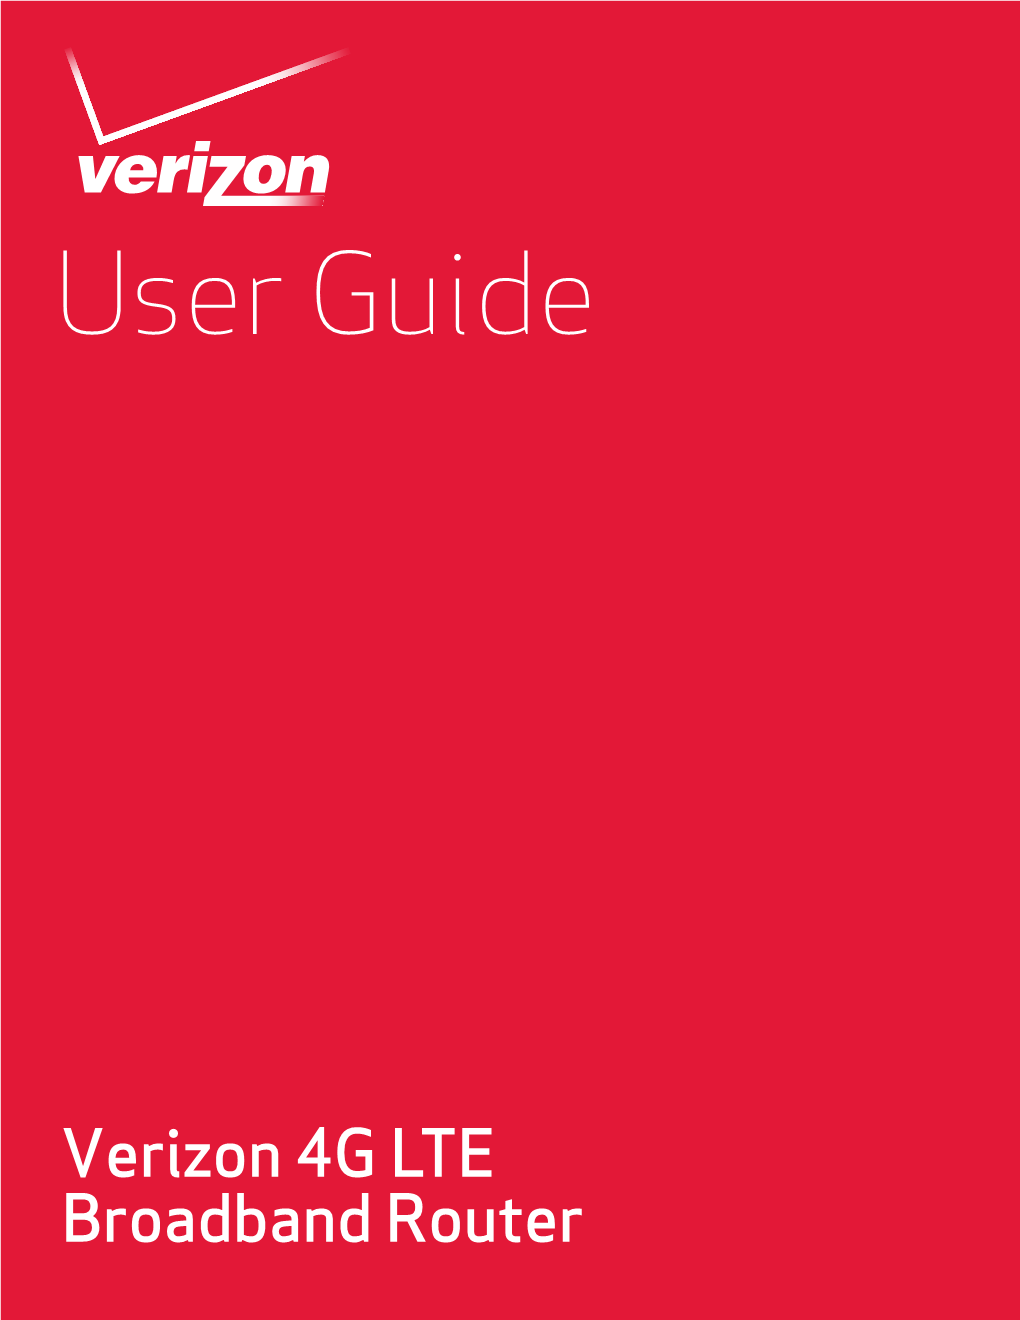 Verizon 4G LTE Broadband Router User Guide